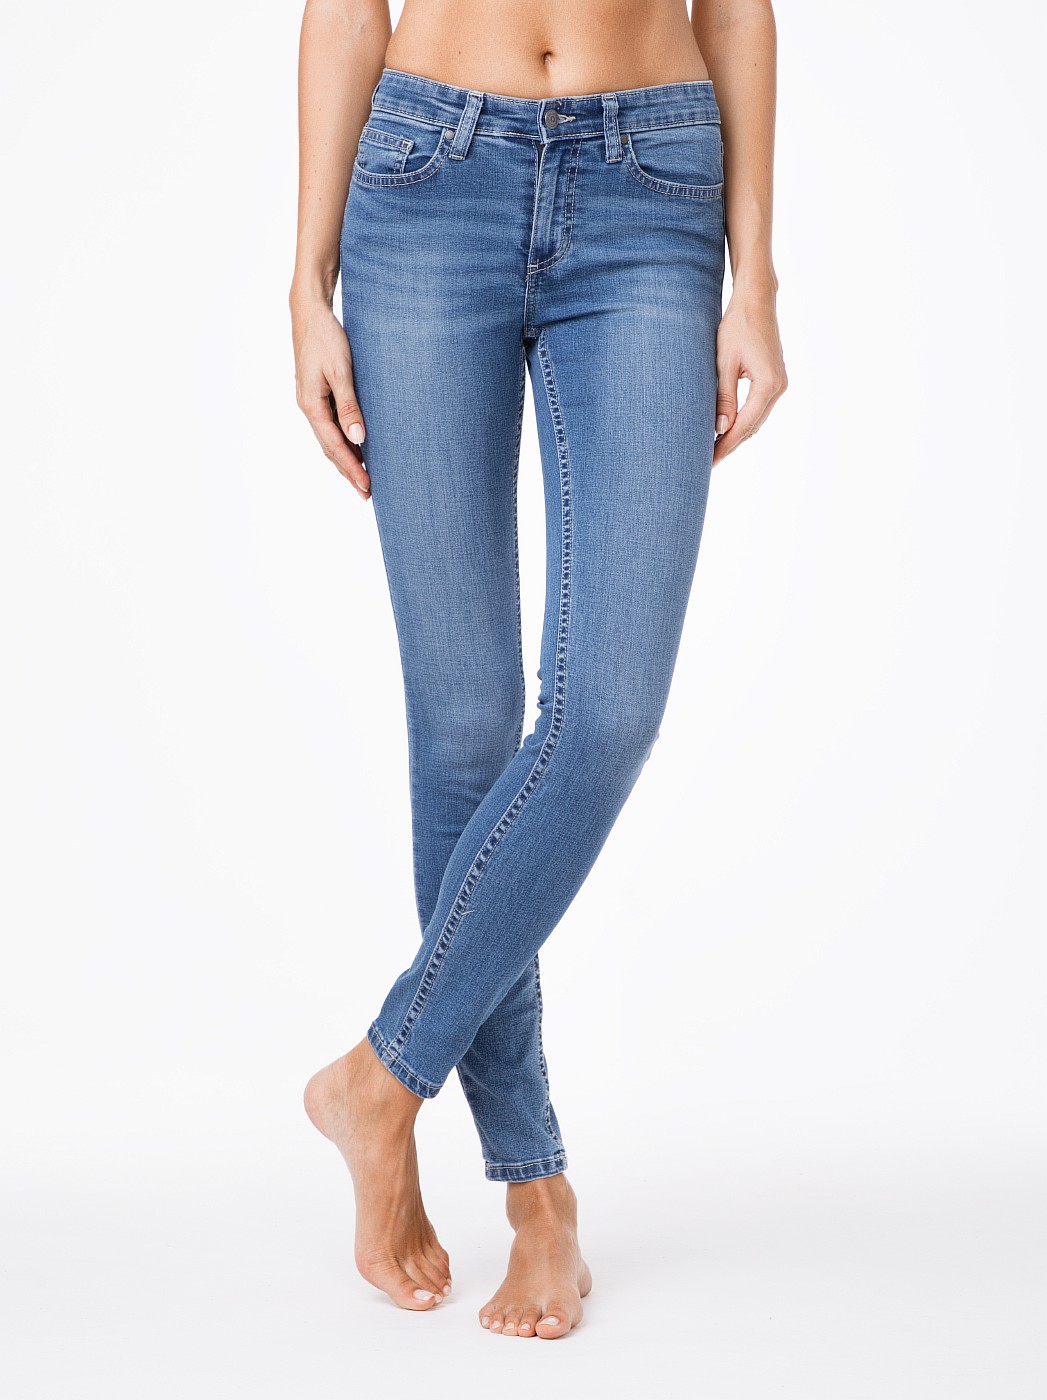 Моделирующие джинсы Skinny со средней посадкой